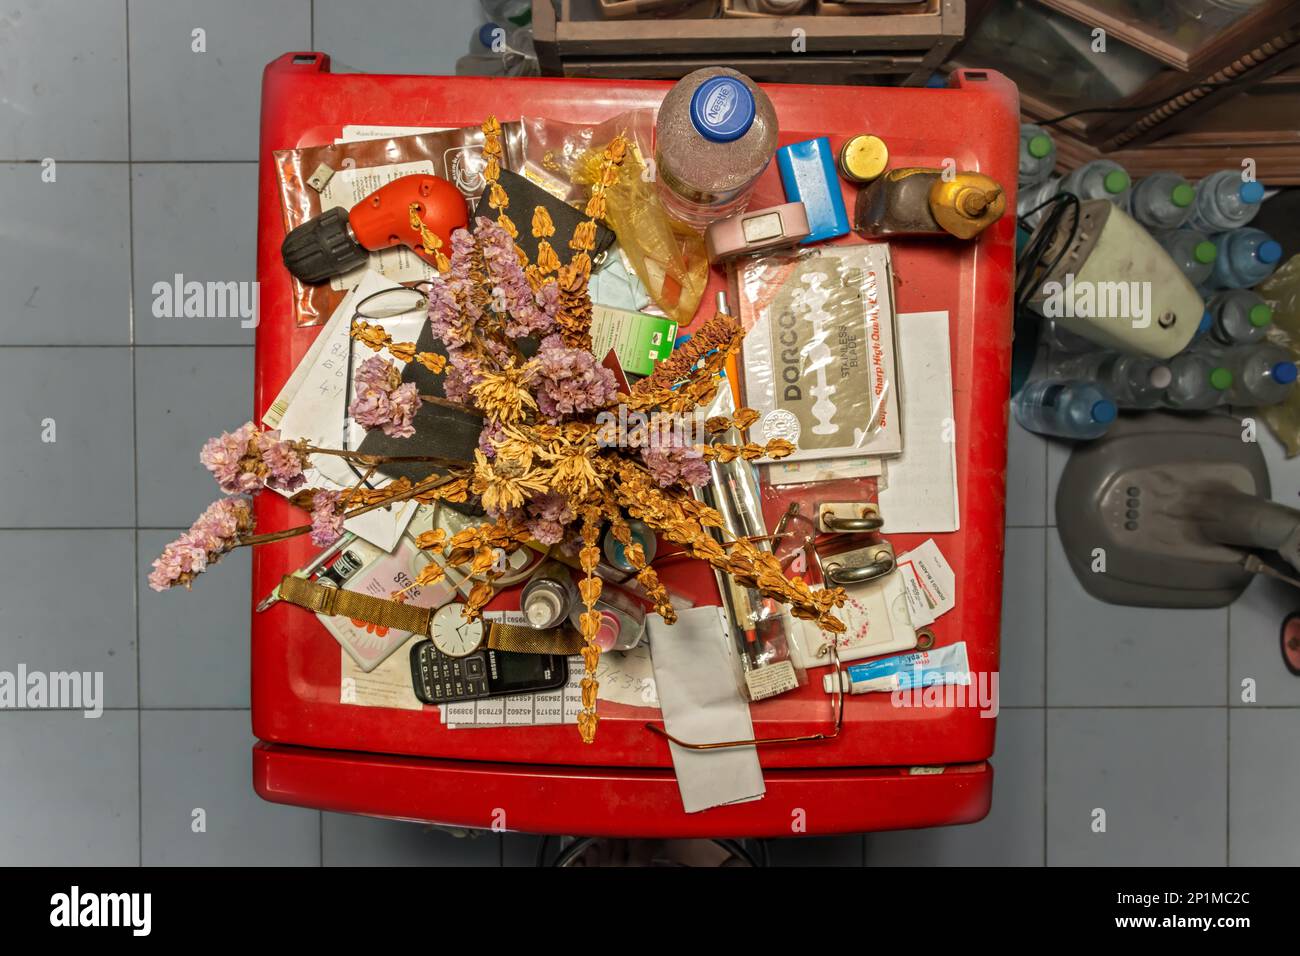 SAMUT PRAKAN, THAÏLANDE, FÉVRIER 05 2022, Une pile de choses poussiéreuses sur le dessus du réfrigérateur dans un foyer thaïlandais Banque D'Images